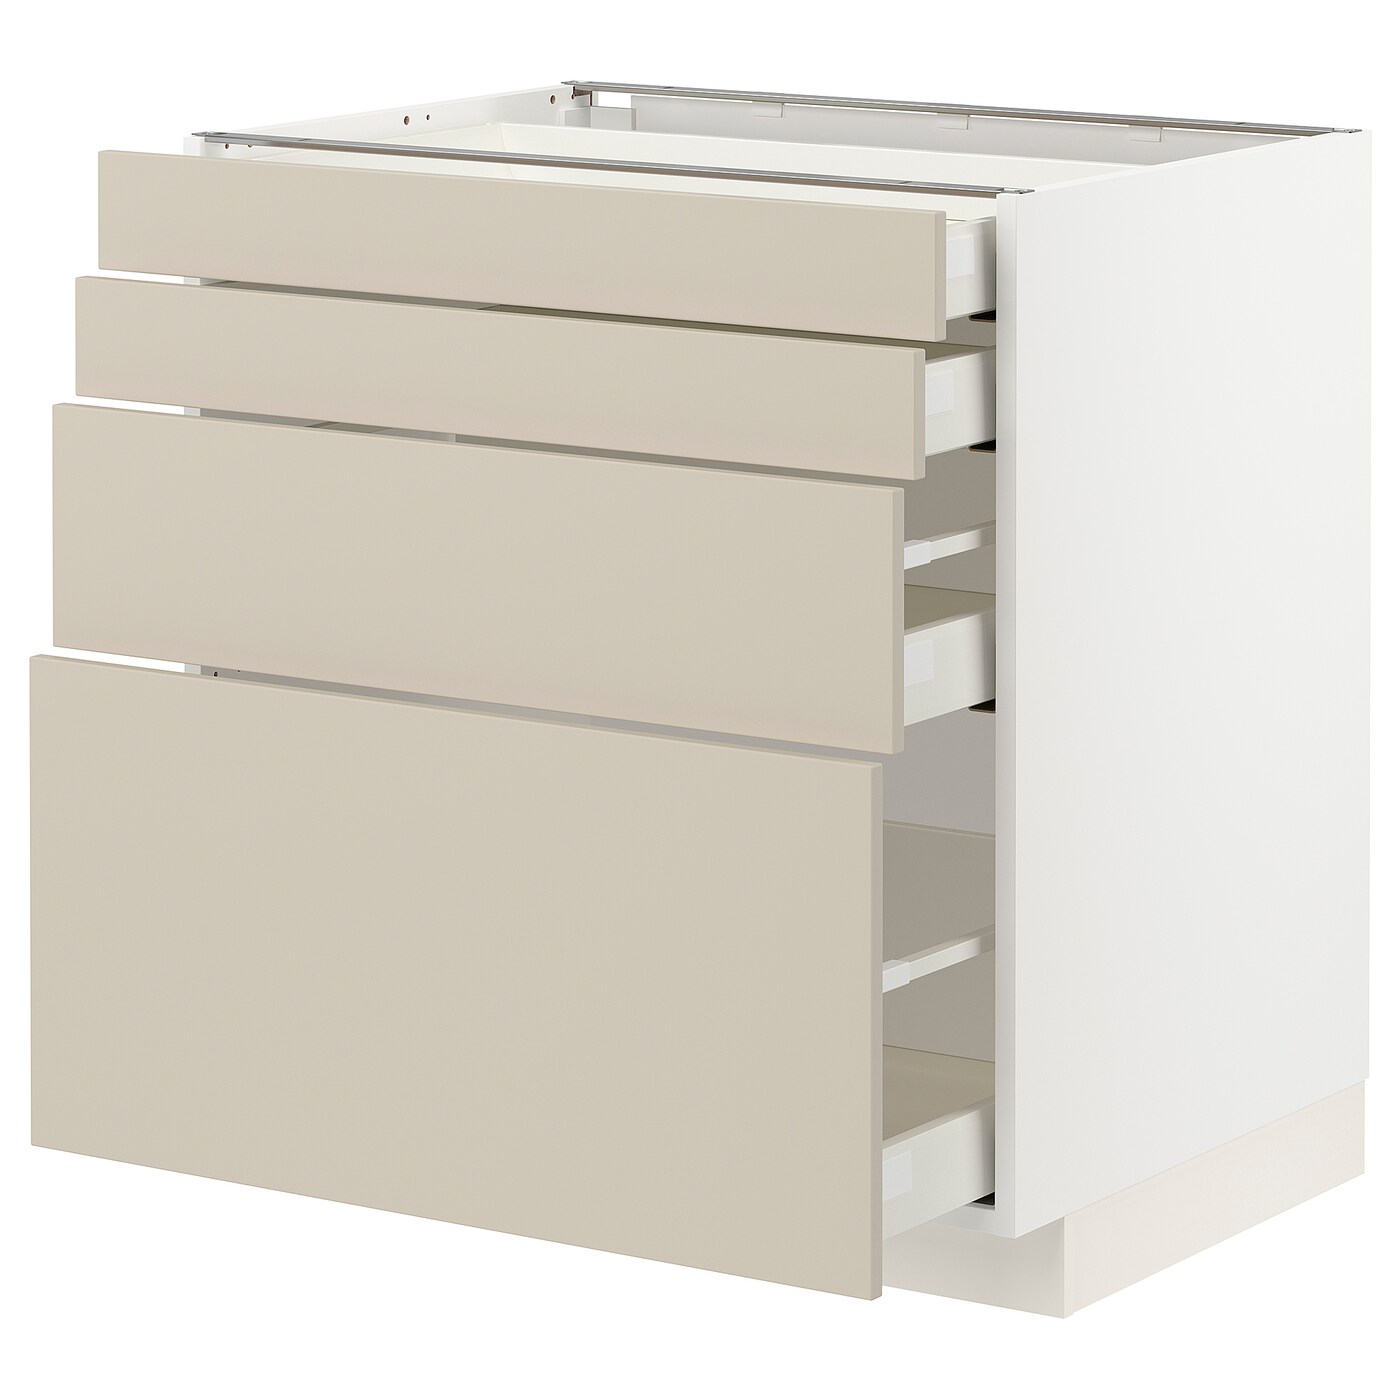 Напольный шкаф  - IKEA METOD MAXIMERA, 88x61,6x80см, белый/бежевый, МЕТОД МАКСИМЕРА ИКЕА